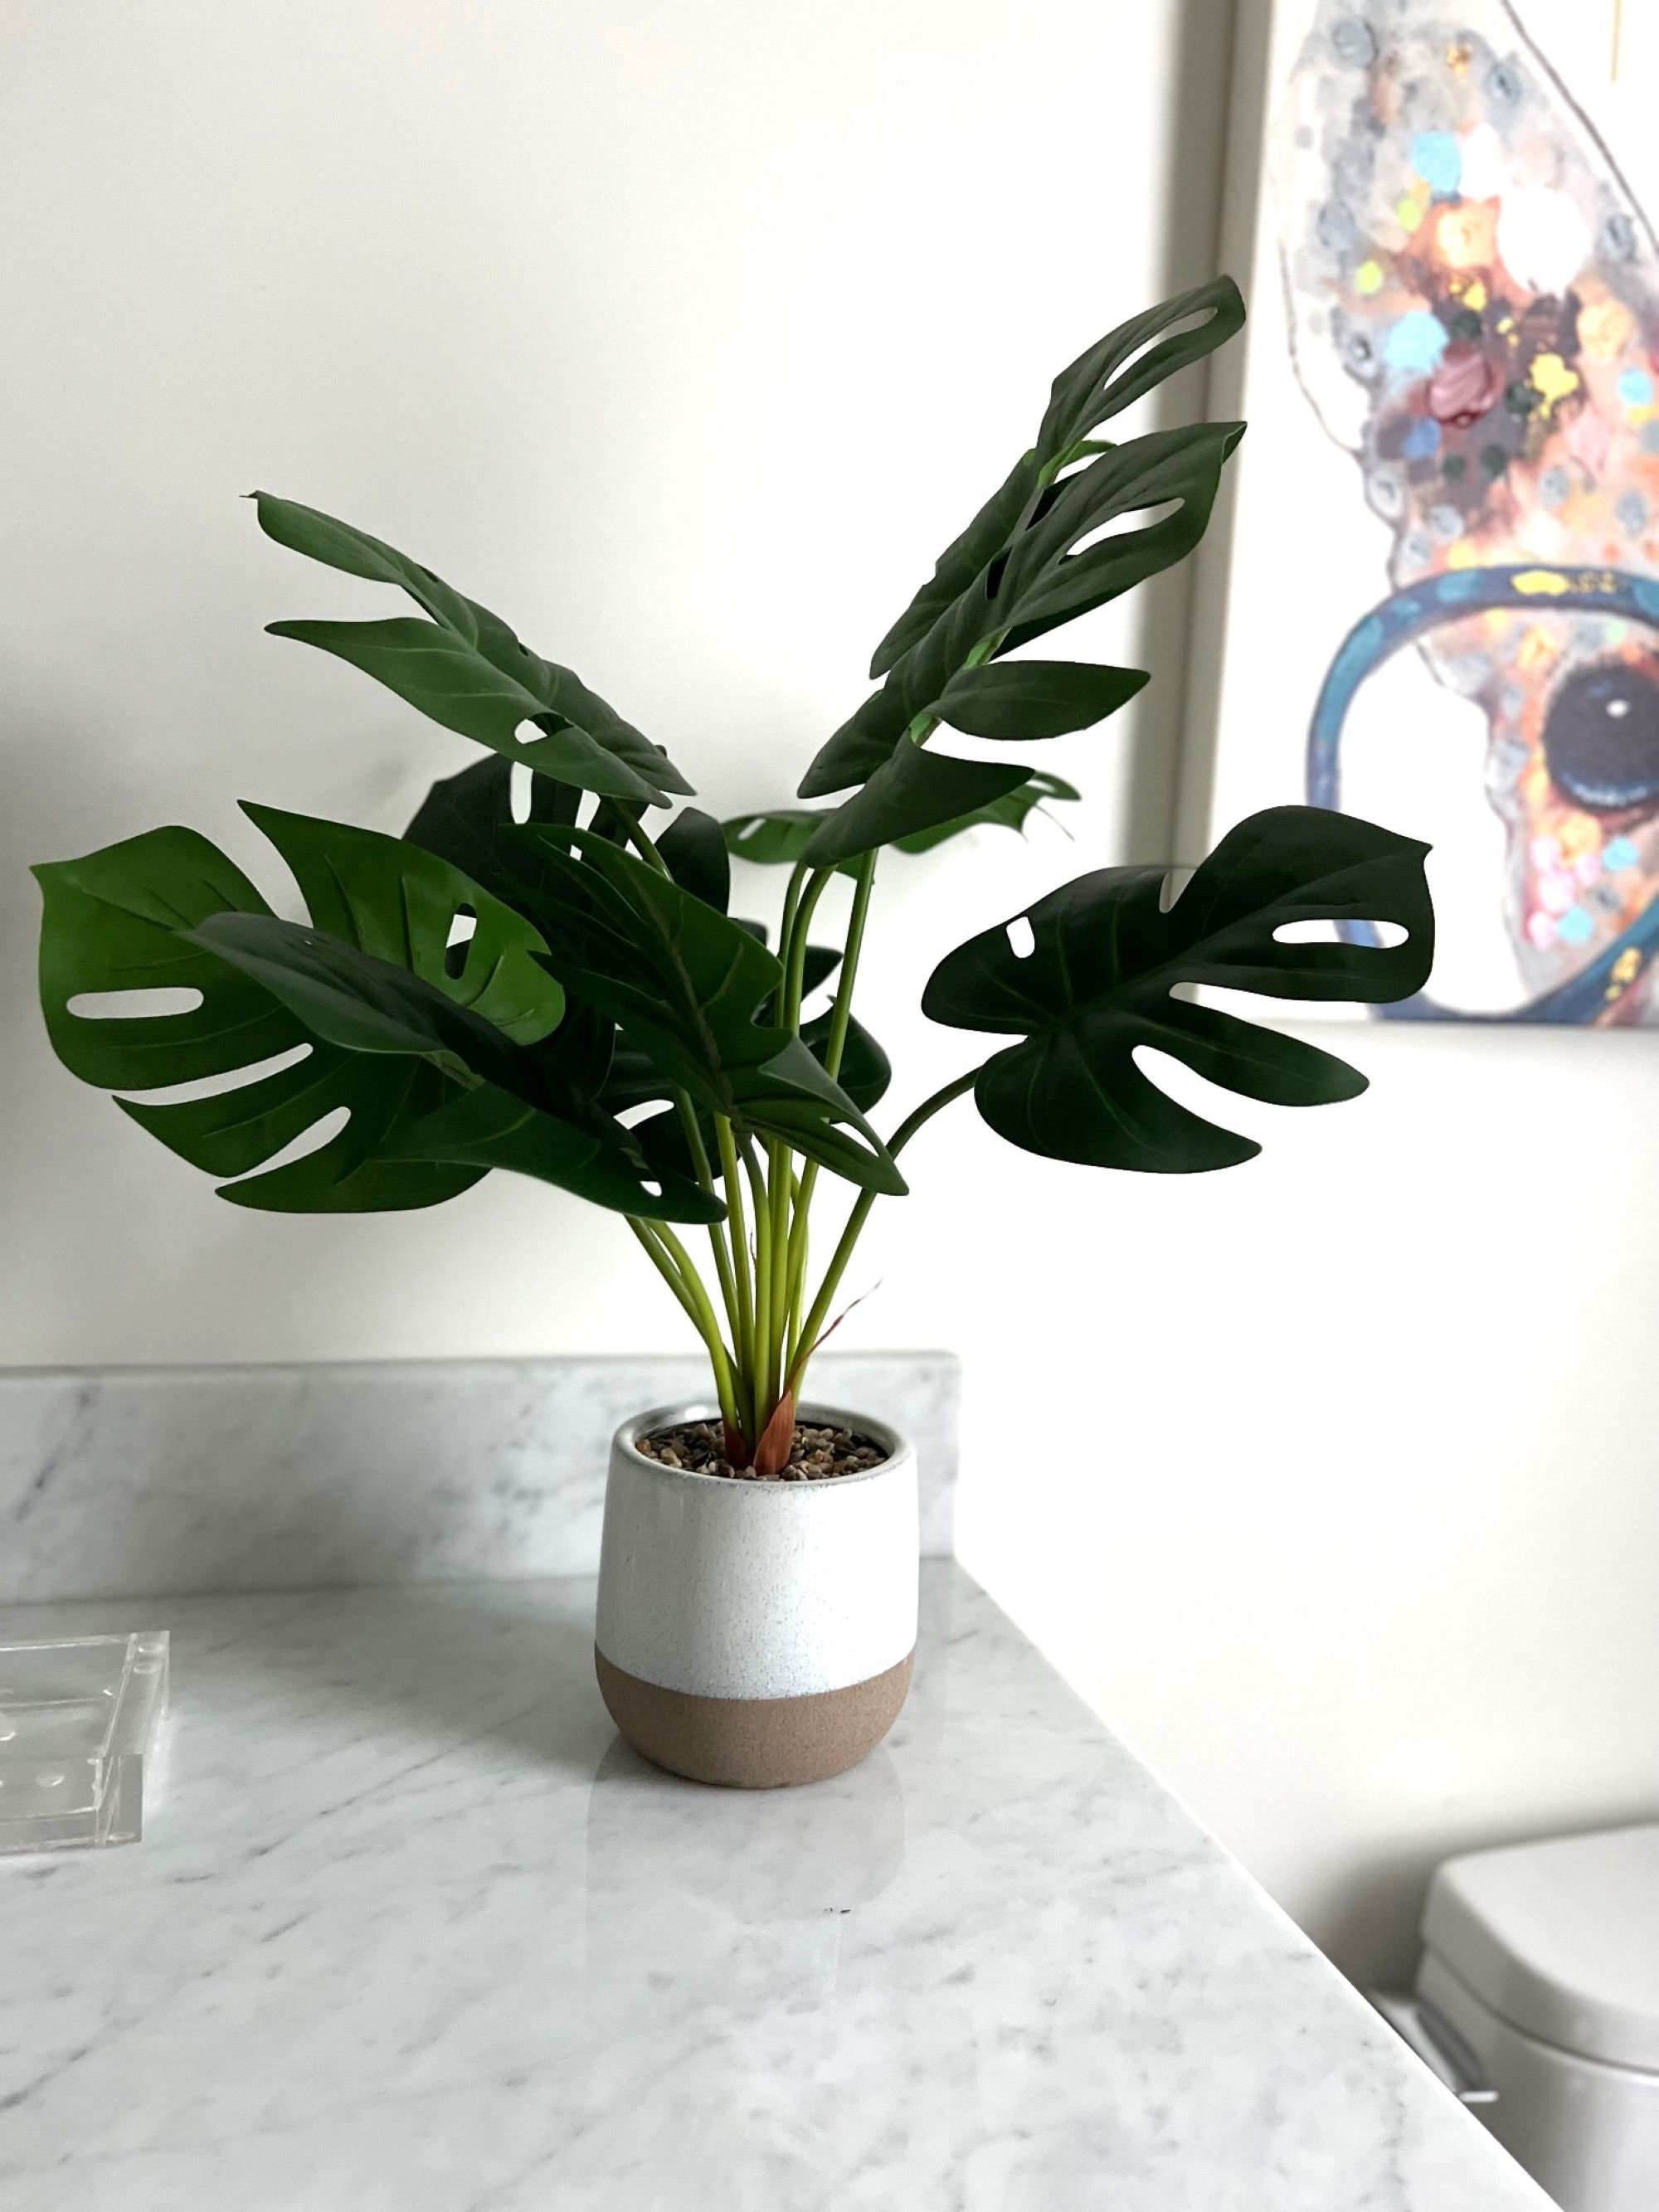 1 fausse plante pour la décoration de salle de bain/bureau à domicile,  petite verdure artificielle artificielle pour la décoration intérieure ( plantes en pot)